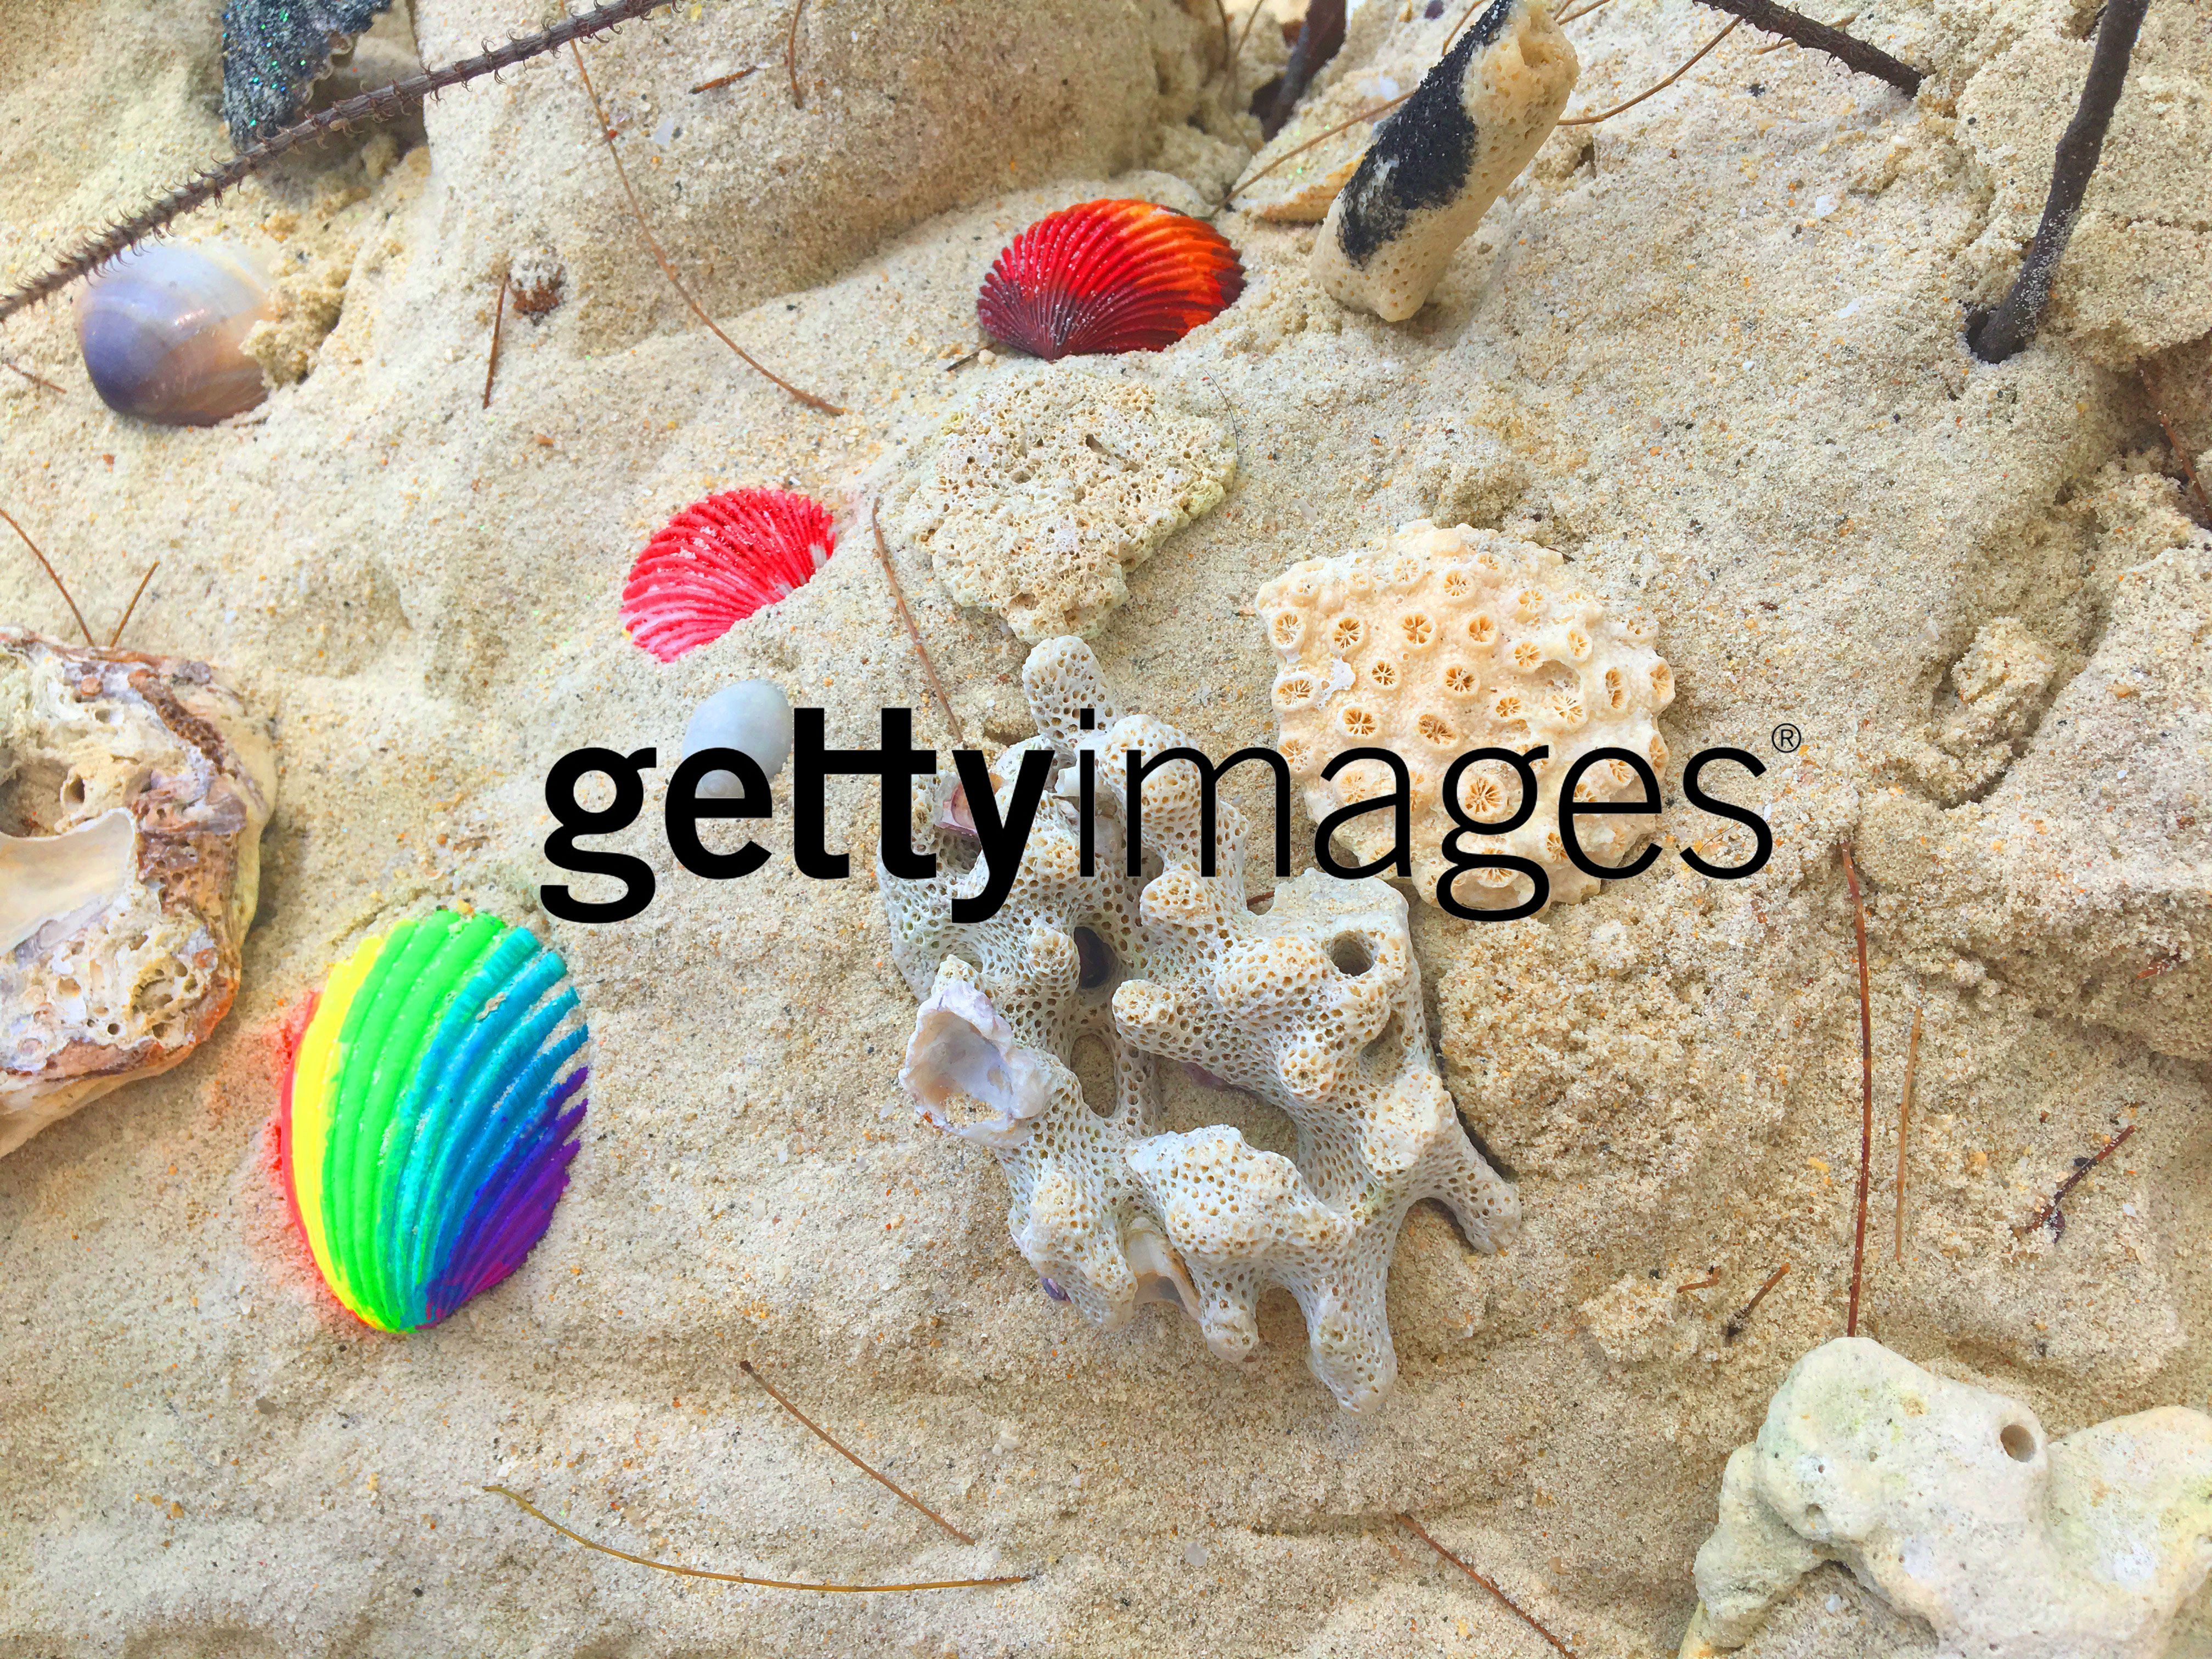 إزالة علامة مائية Getty Images | تحميل مجاني.